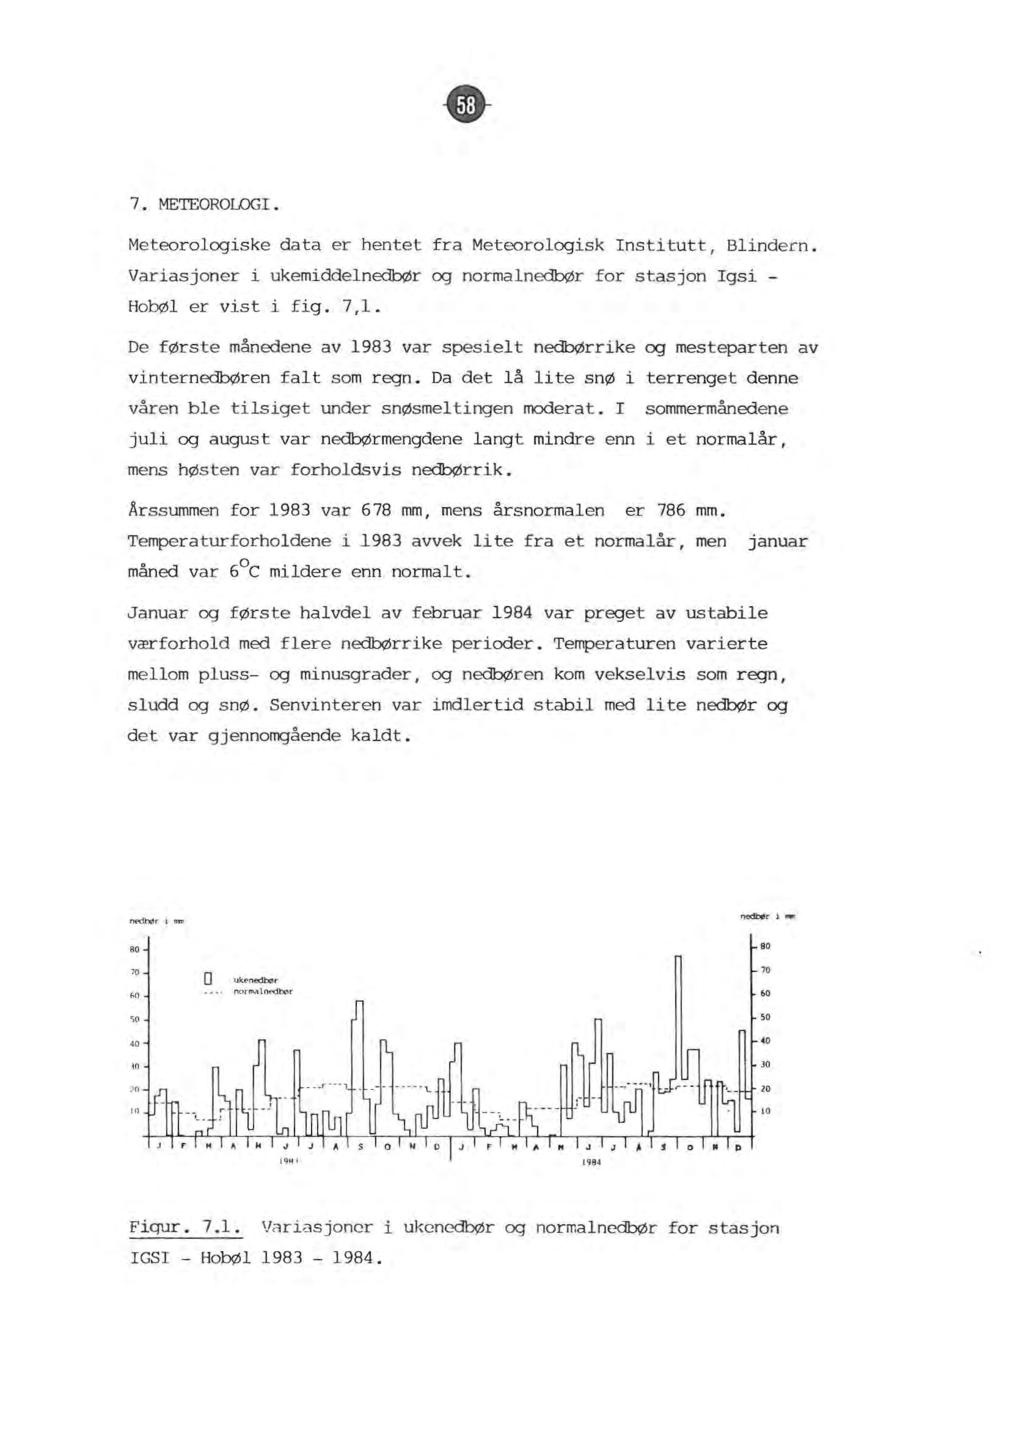 7 METEOROLOGI Meteoroogiske data er hentet fra Meteoroogisk Institutt, Binder n. Variasjoner i ukemiddenedbør og normanedbør for stasjon Igsi - HobØ er vist i fig. 7,1.